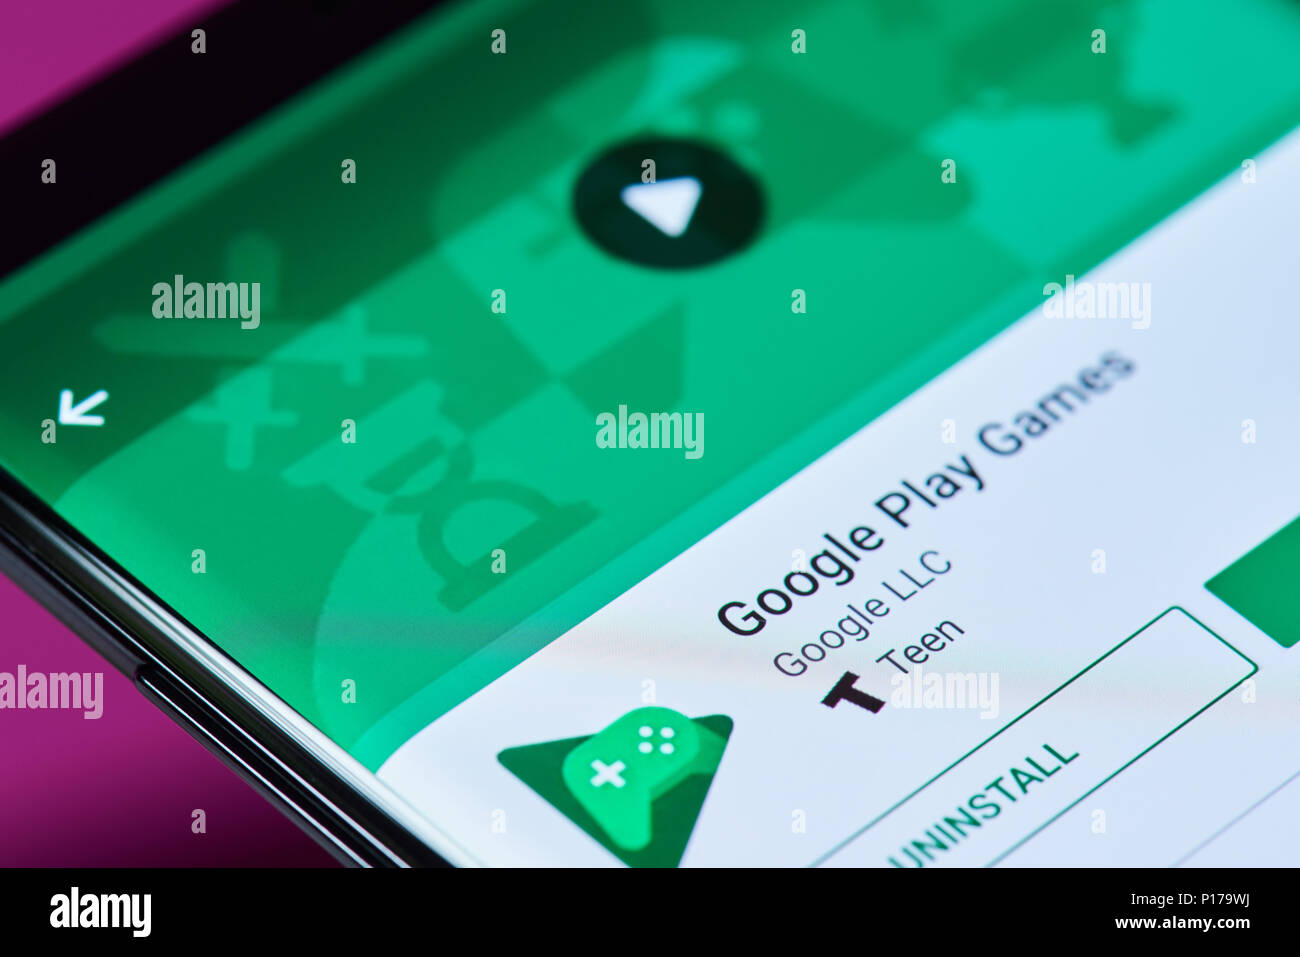 Nueva York, Estados Unidos - 10 de junio de 2018: juegos Google Apps en la pantalla del smartphone Android Vista cercana Foto de stock